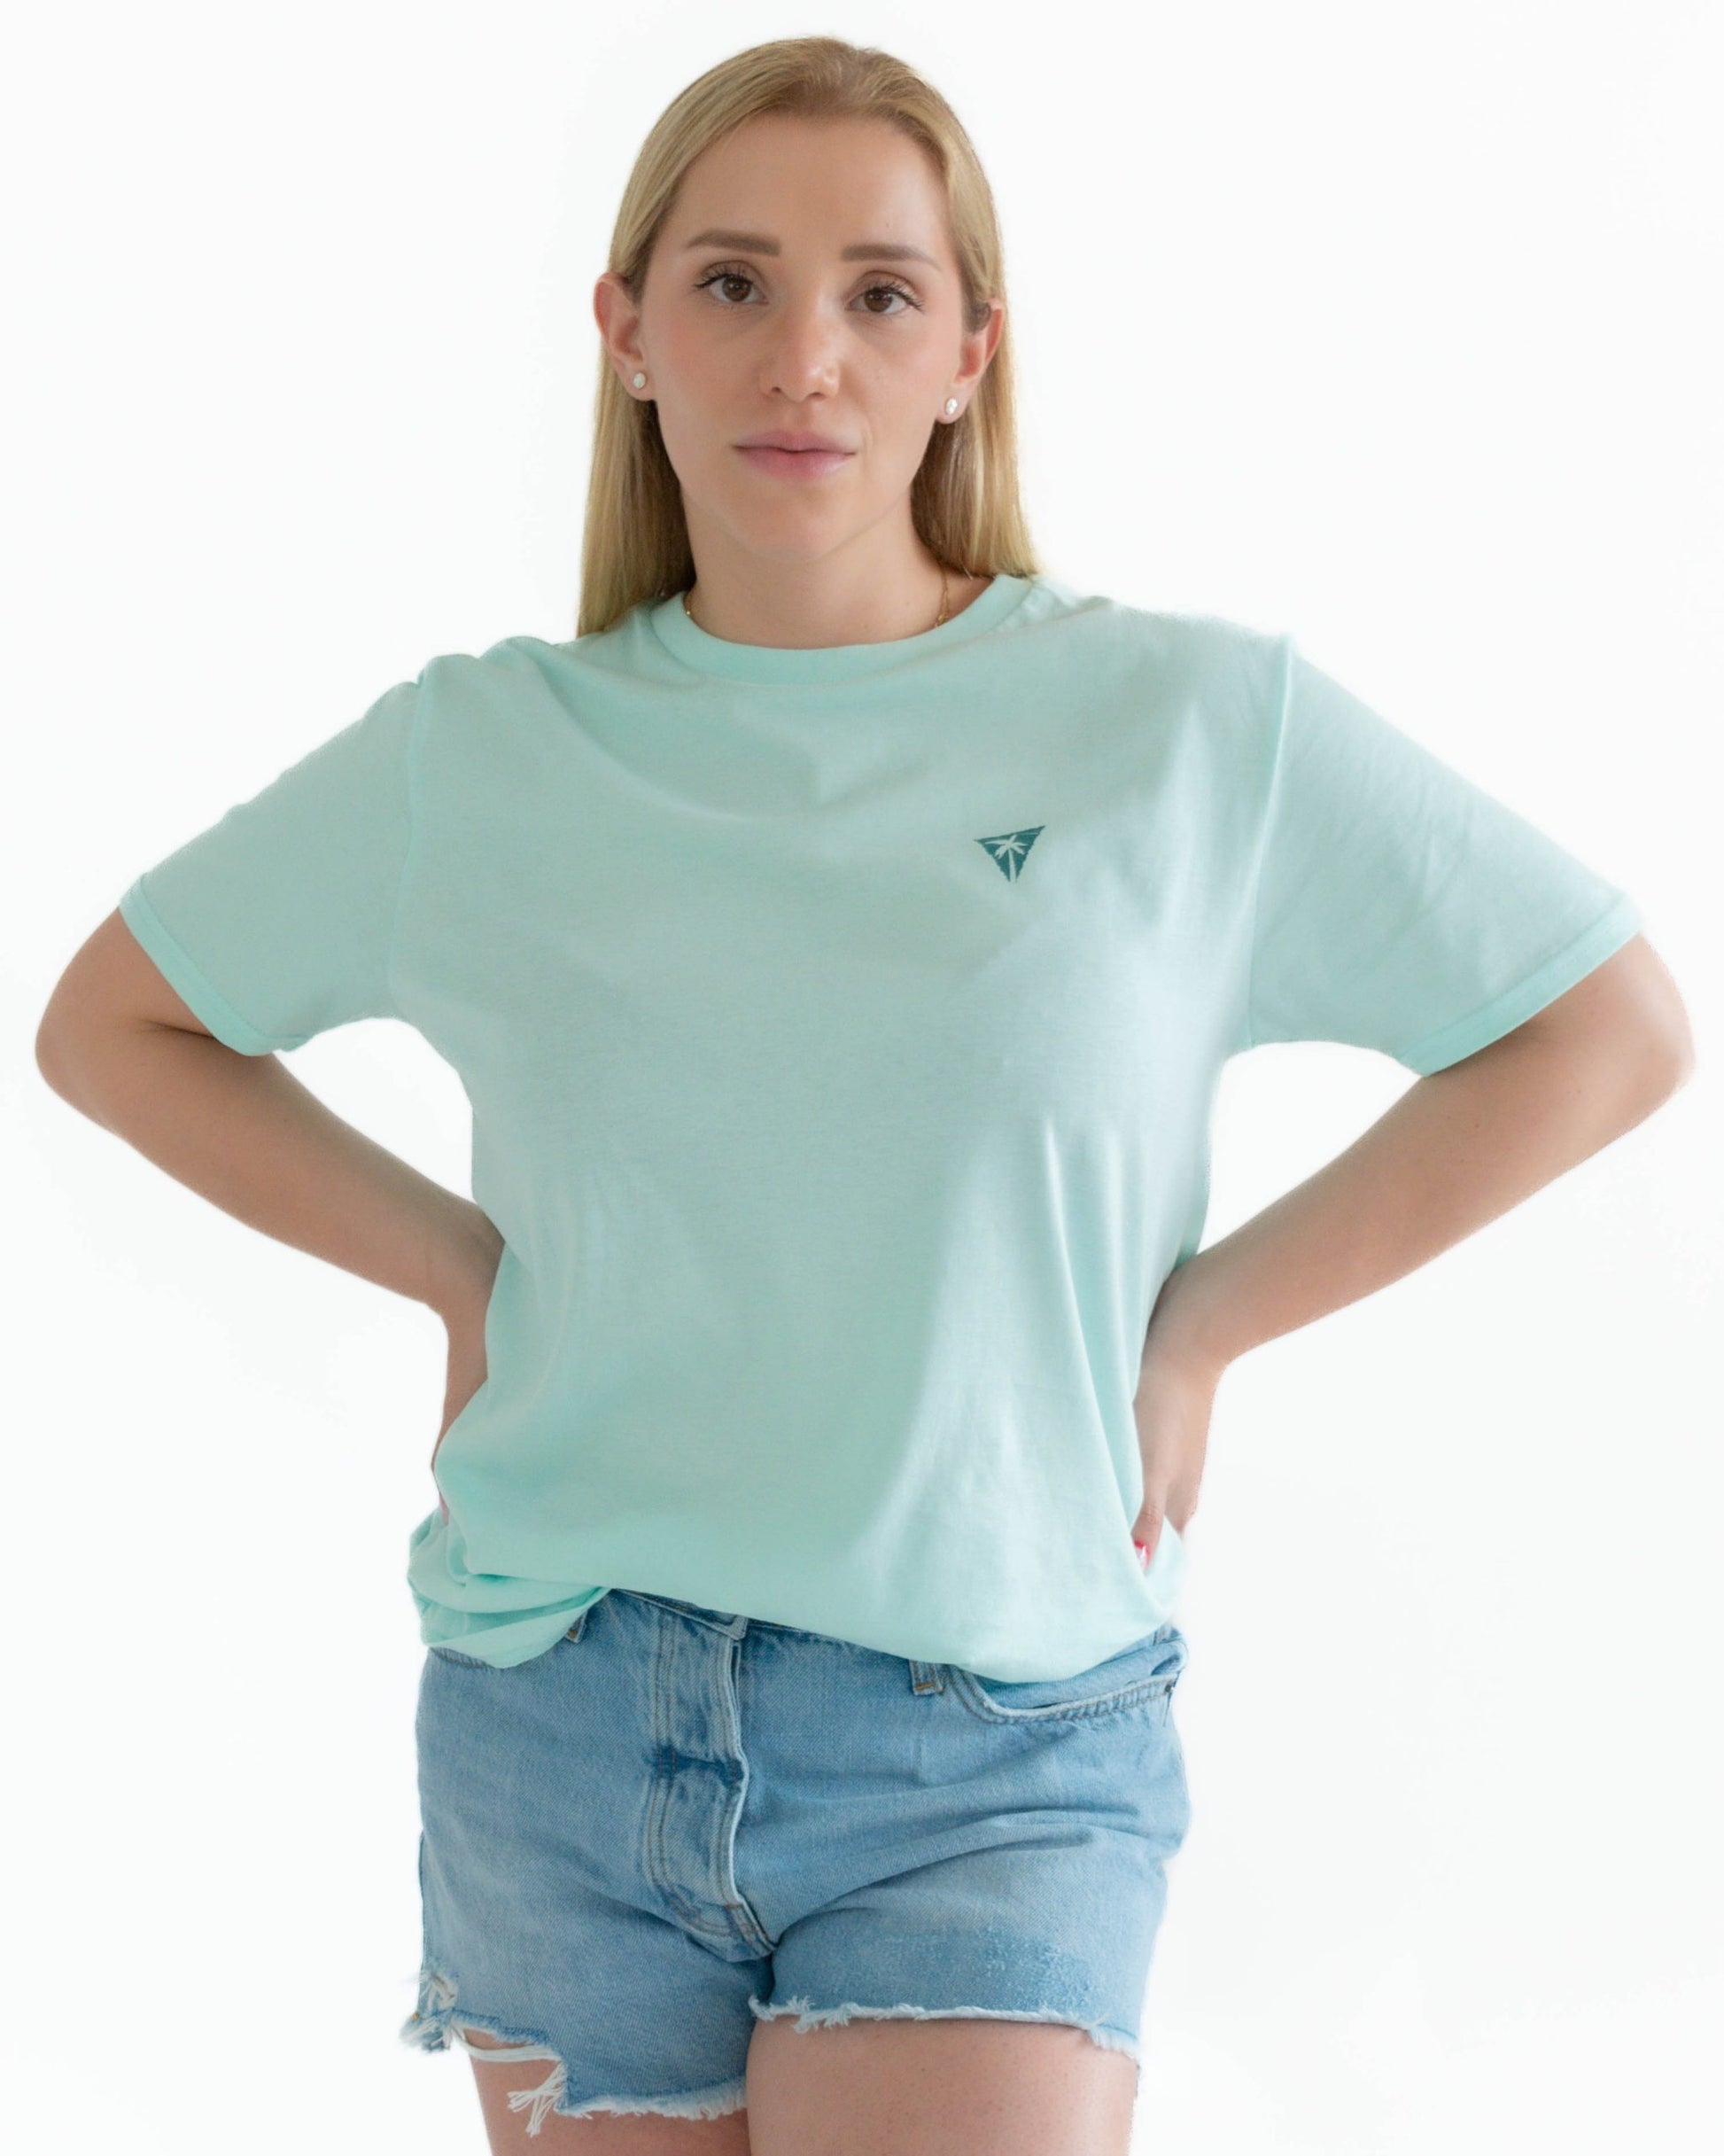 camiseta-unisex-espejo-turquesa-senlima-1